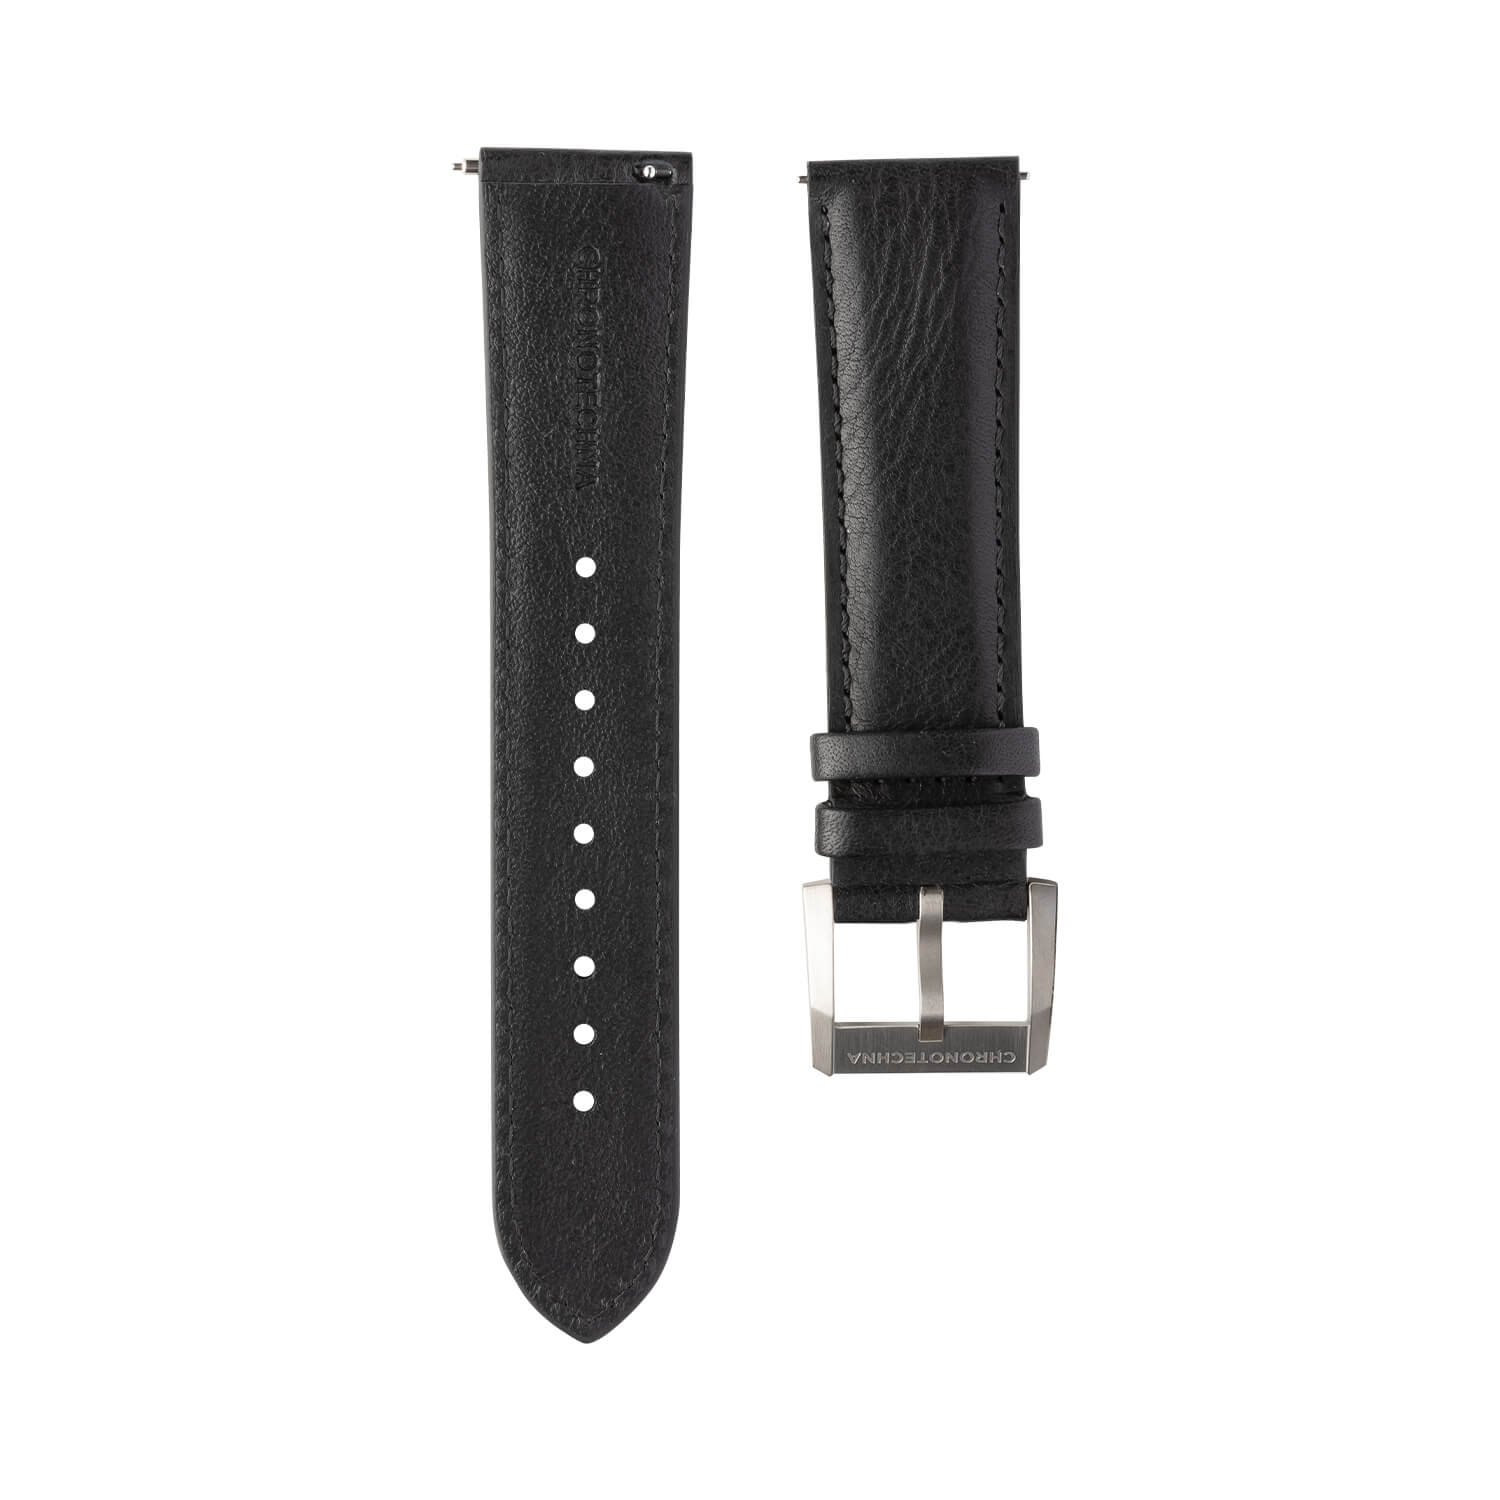 SeaQuest Dive pásek od značky Chronotechna, 22mm, černý kožený, rychloupínací stěžejka, ocelová přezka